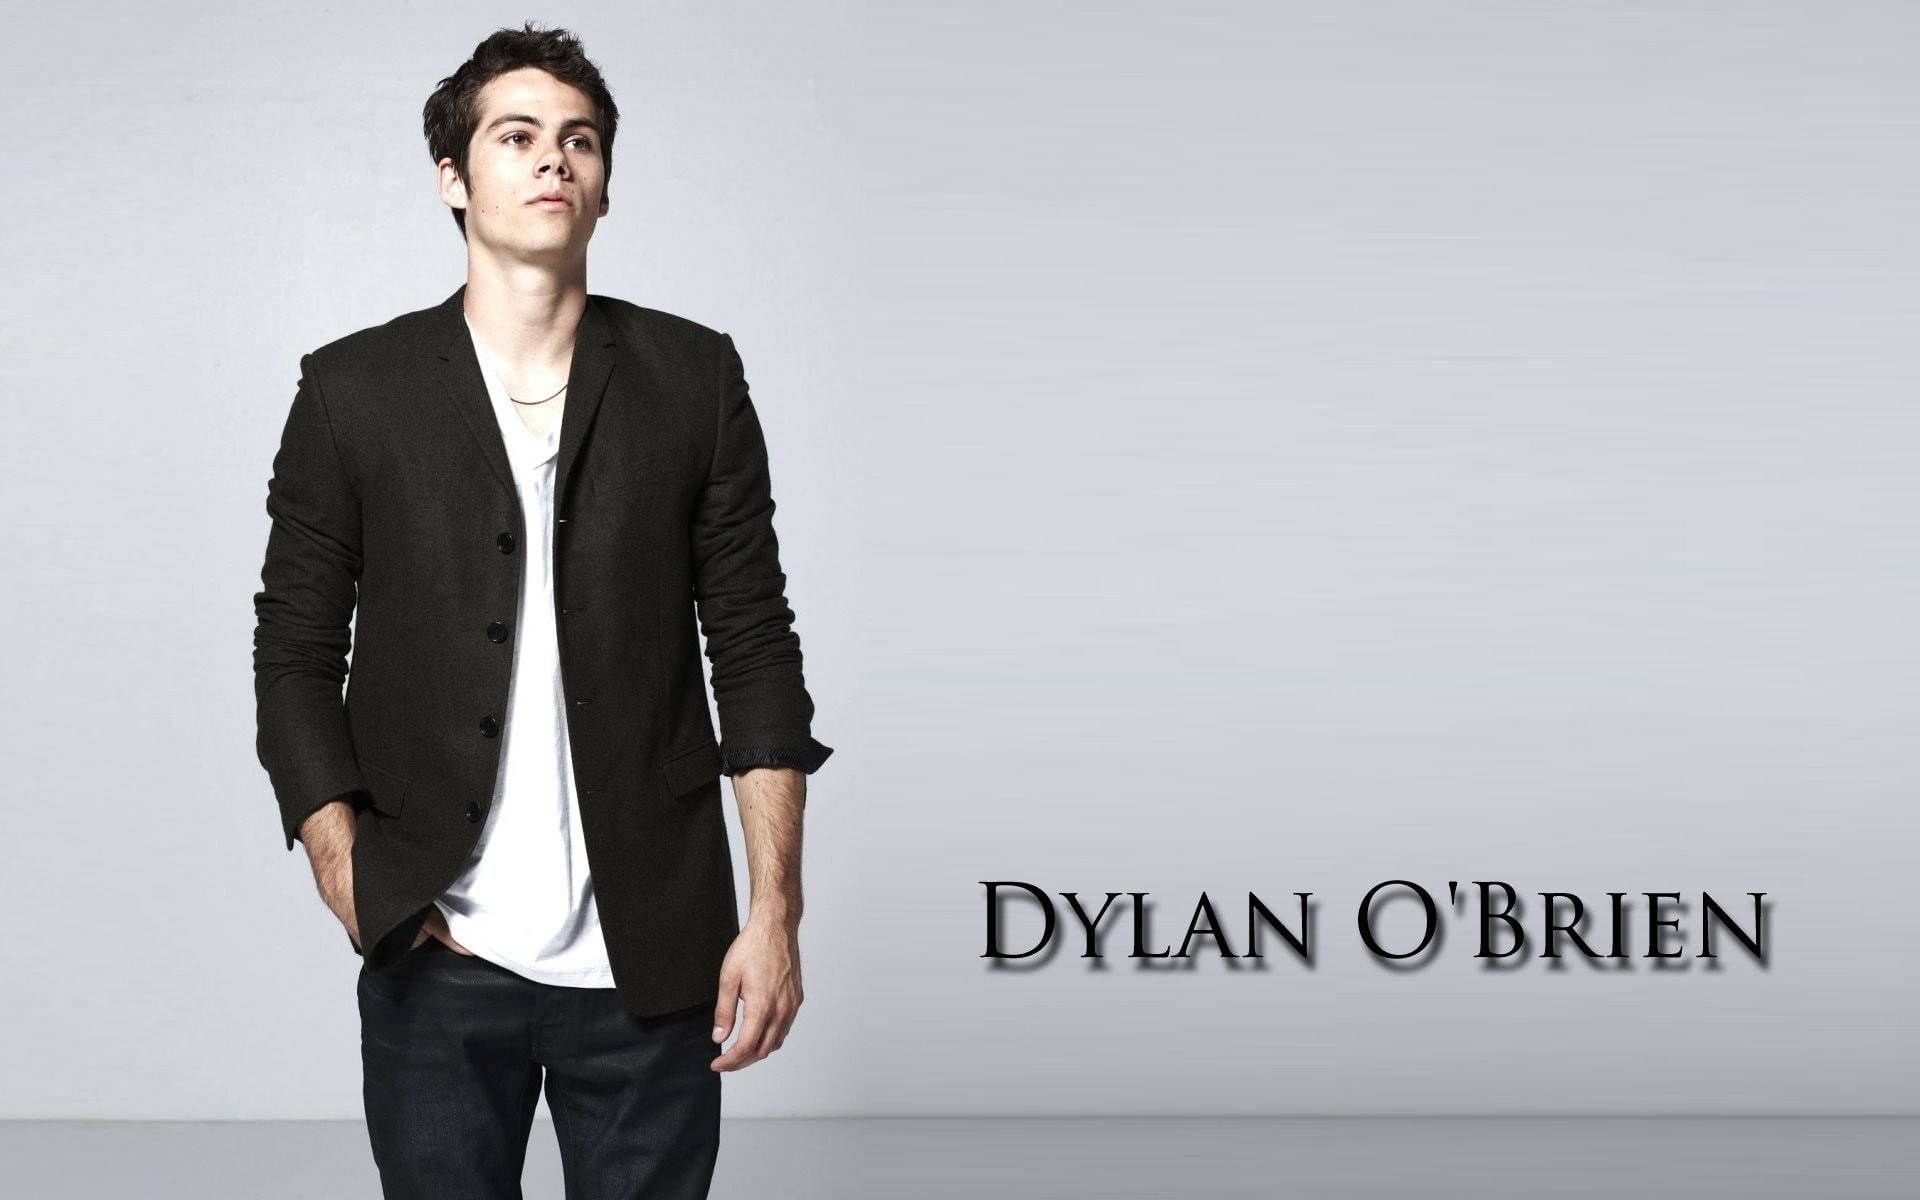 Dylan O'brien Teen Wolf Photoshoot Wallpaper